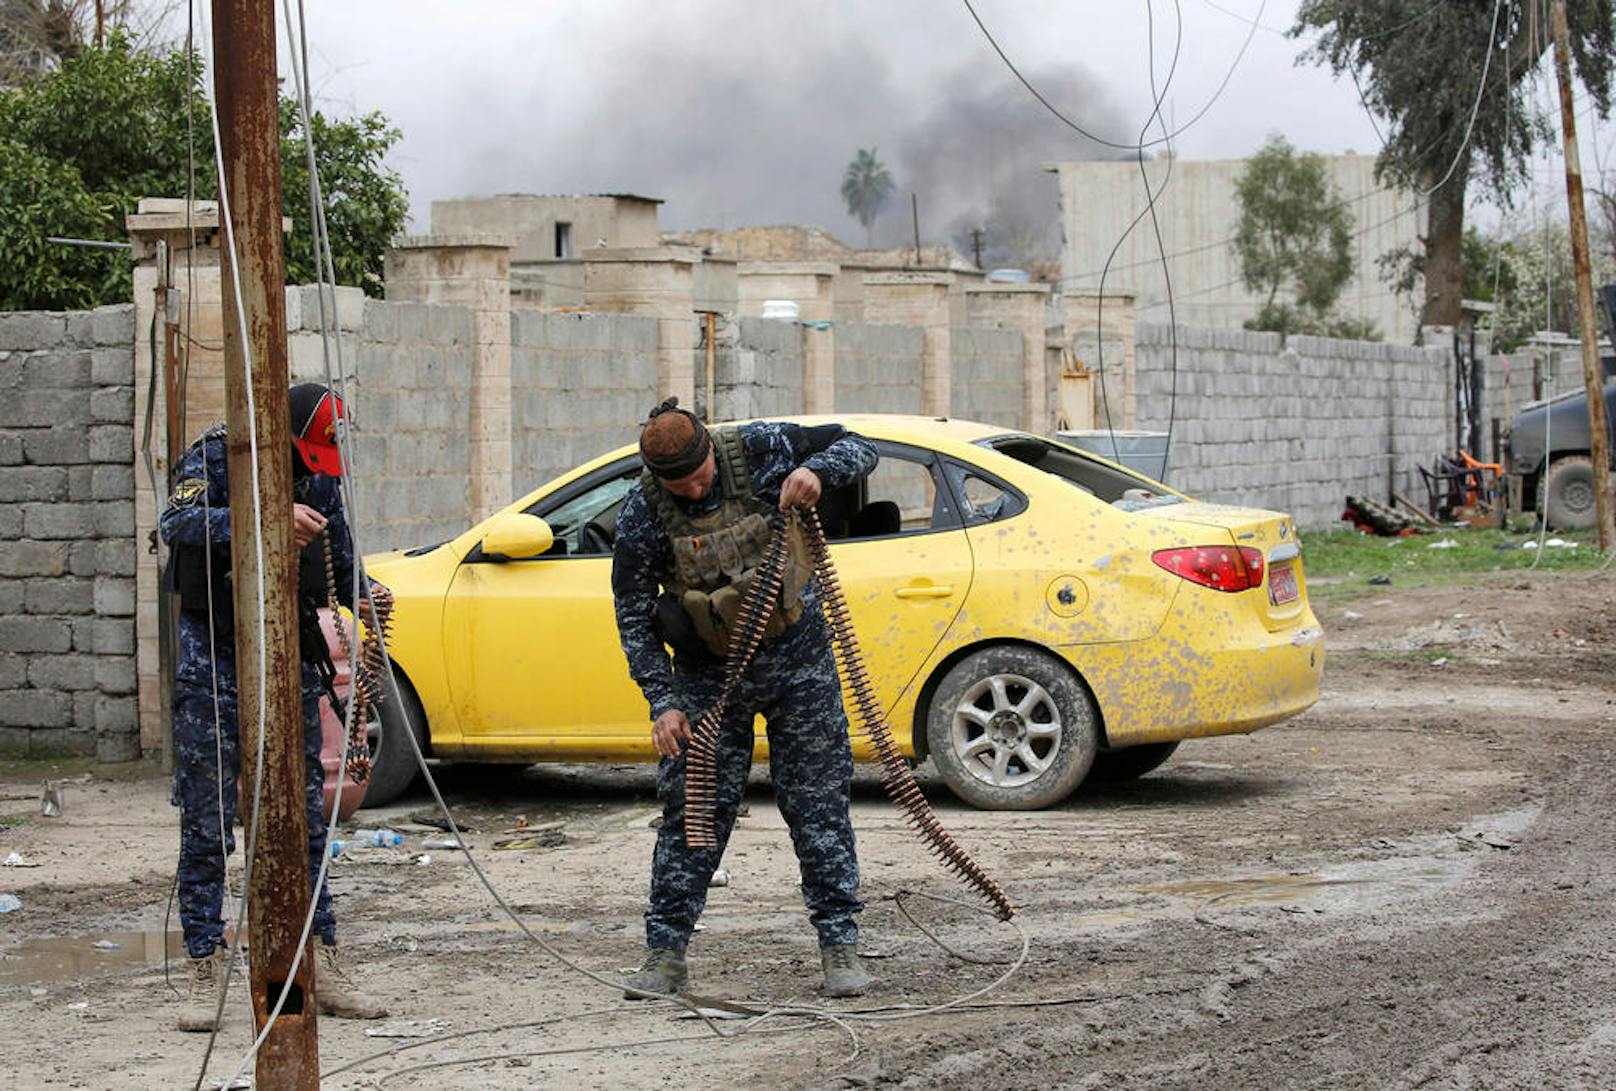 21.03.2017: Irakische Sicherheitskräfte überprüfen vor einem Einsatz gegen IS-Kämpfer in der Altstadt von Mossul ihre Munition. (Foto: Reuters)